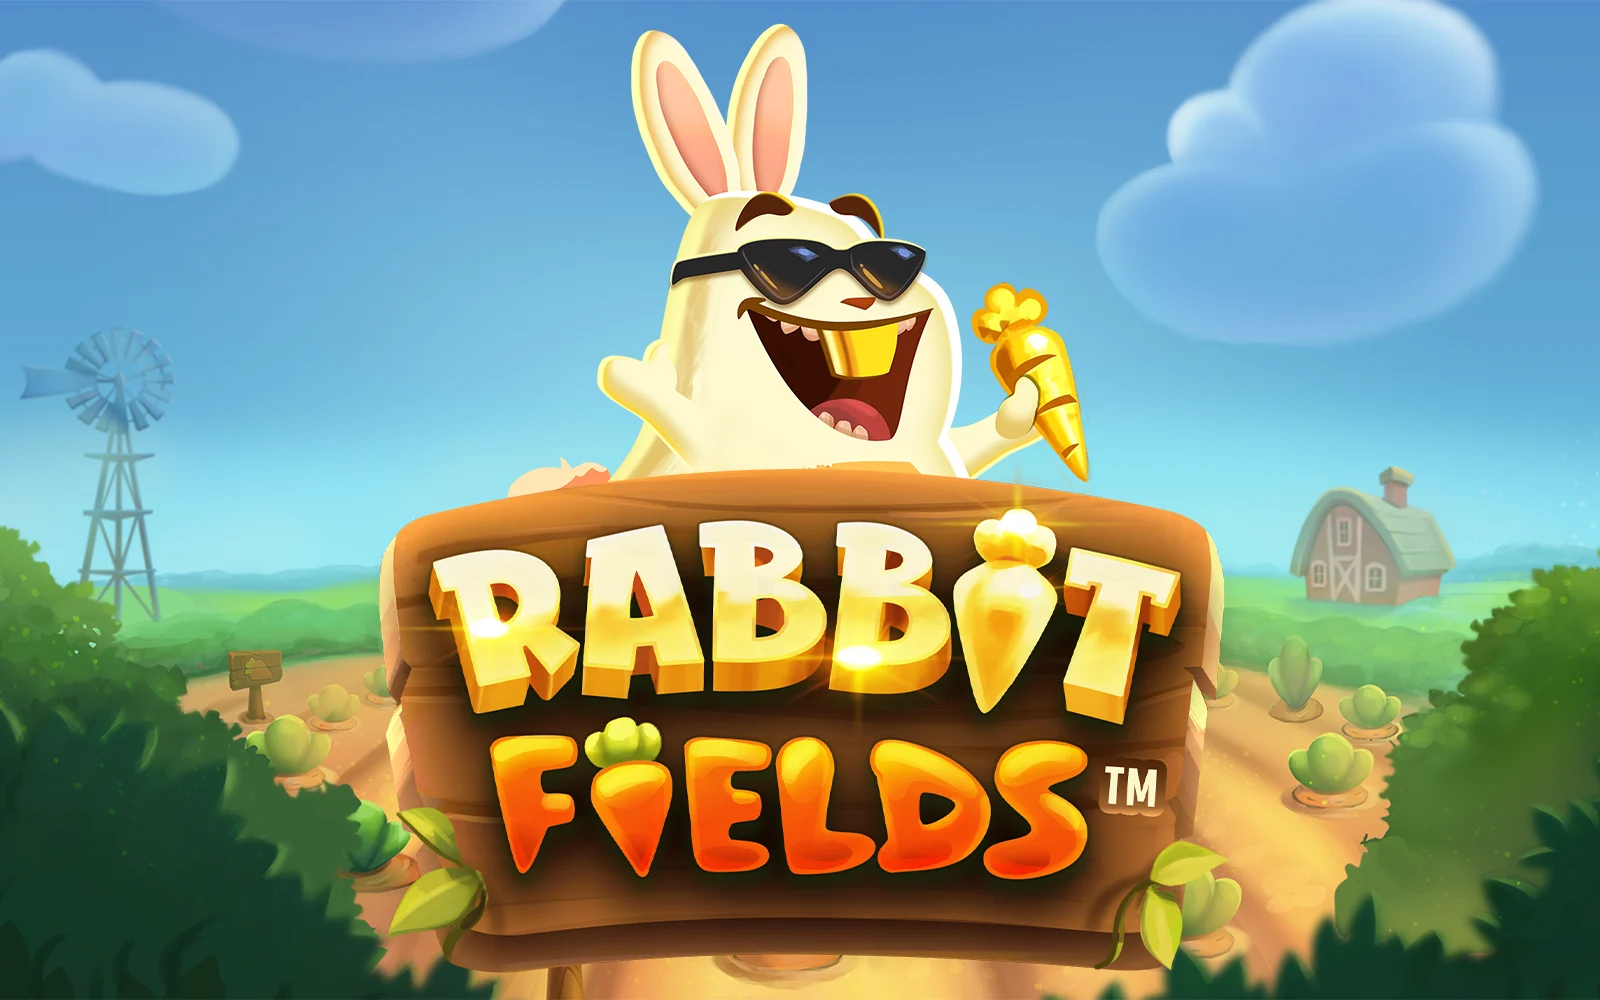 Spil Rabbit Fields™ på Starcasino.be online kasino
